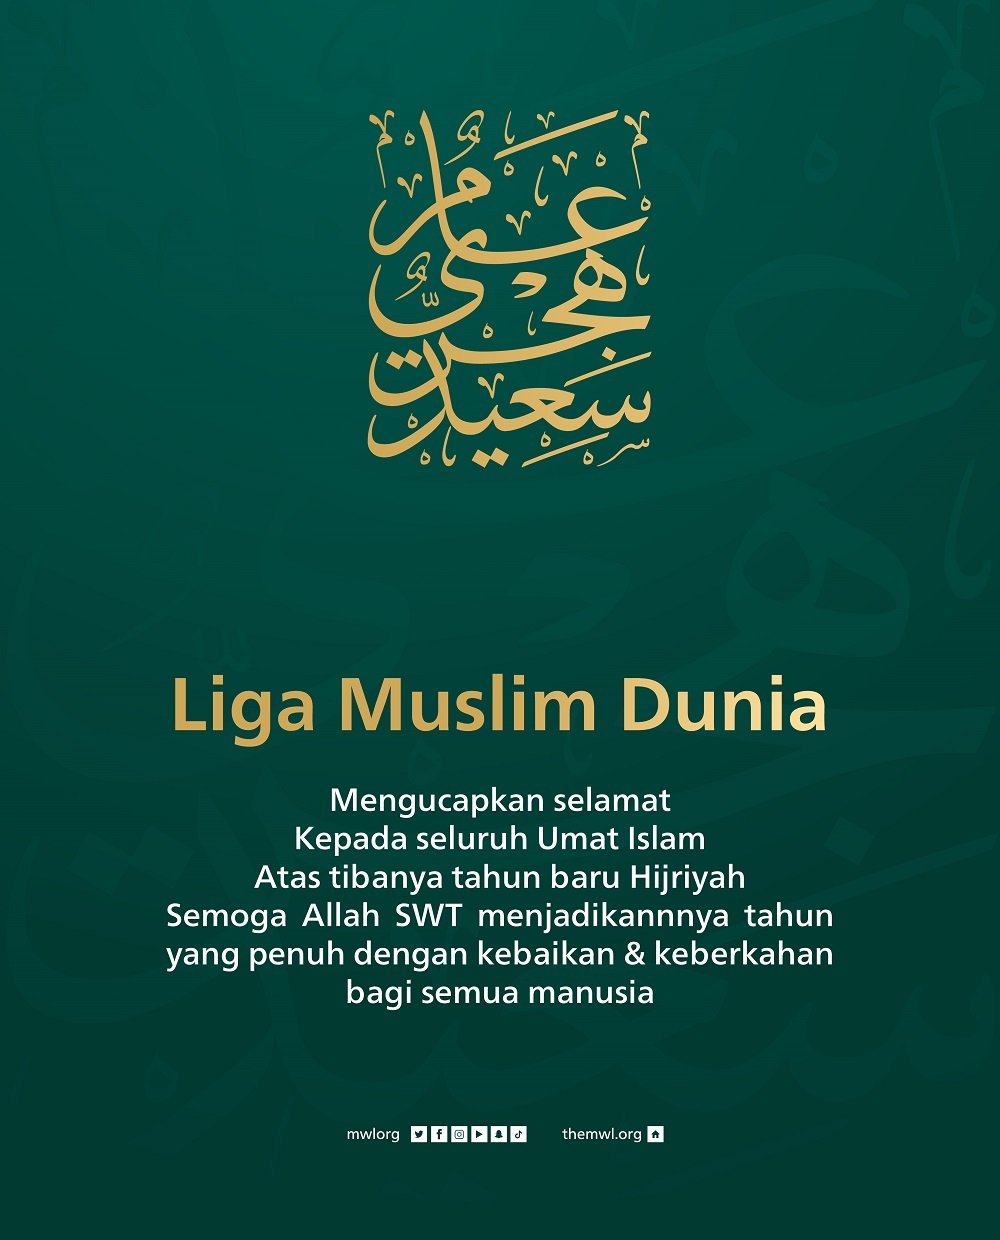 Liga Muslim Dunia mengucapkan selamat tahun baru Hijriah untuk semua! Semoga Tahun Baru Hijriah 1445H menjadi tahun yang penuh berkah bagi semua.